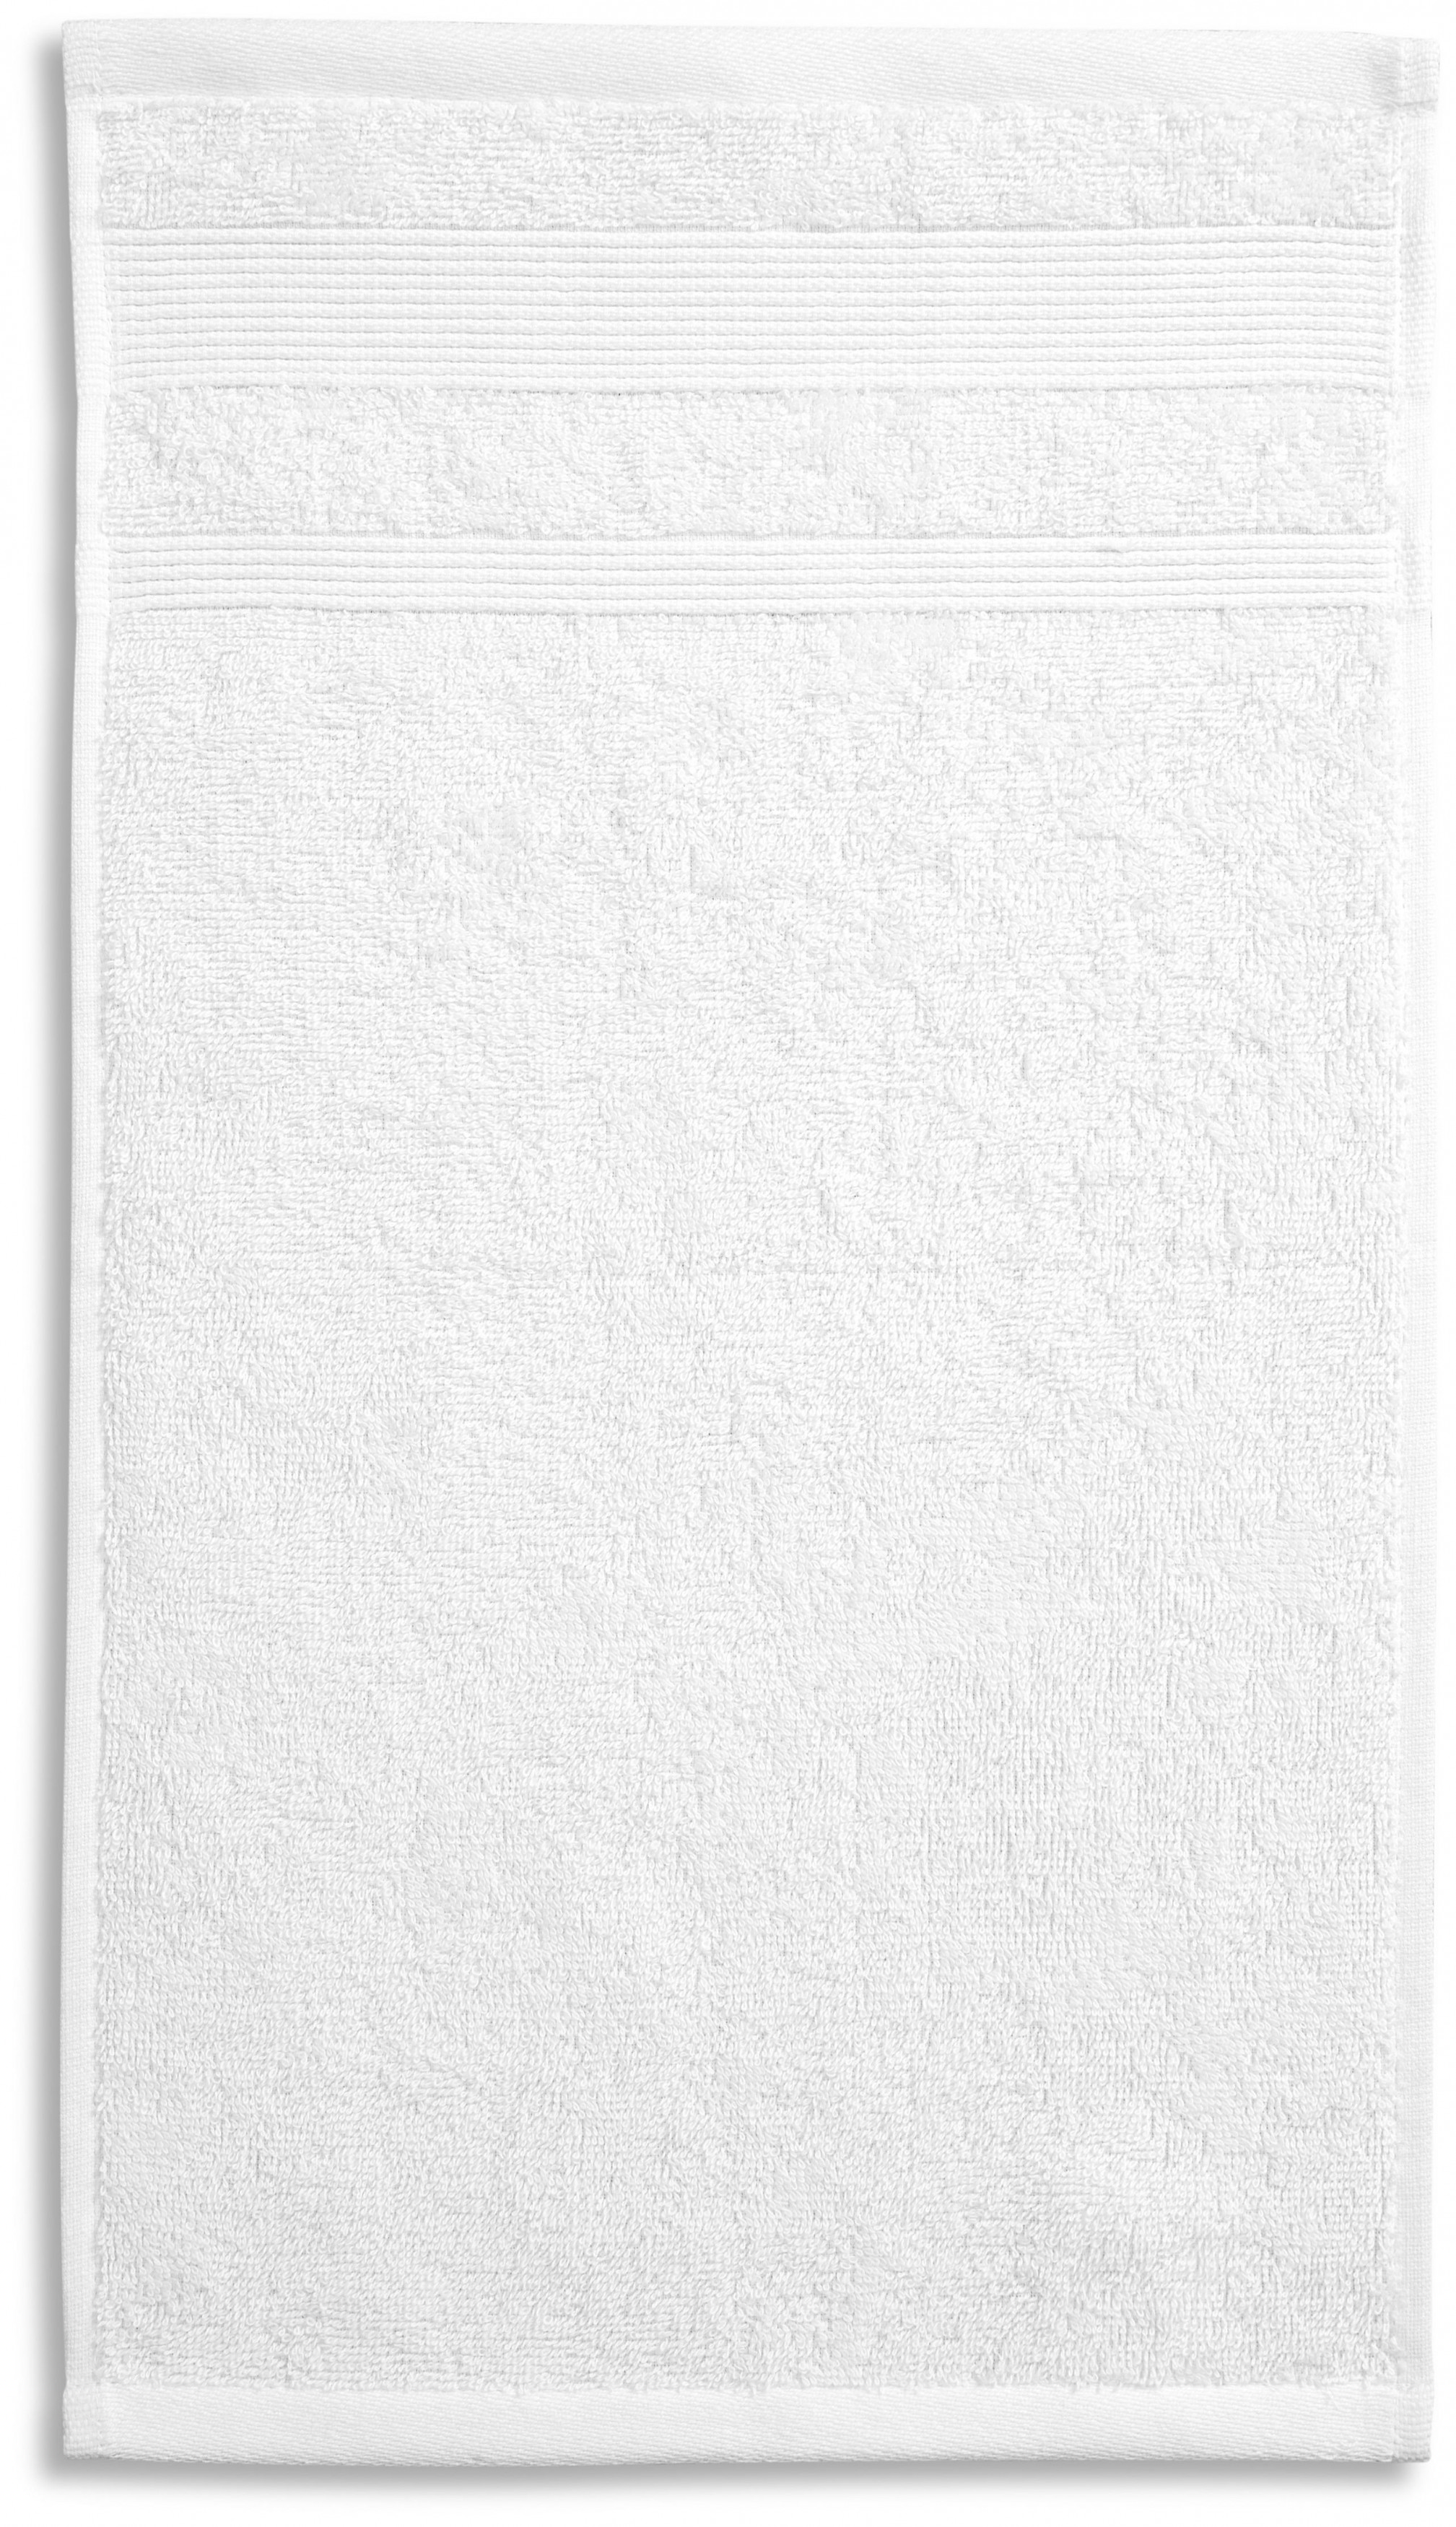 Osuška z organickej bavlny, biela, 70x140cm